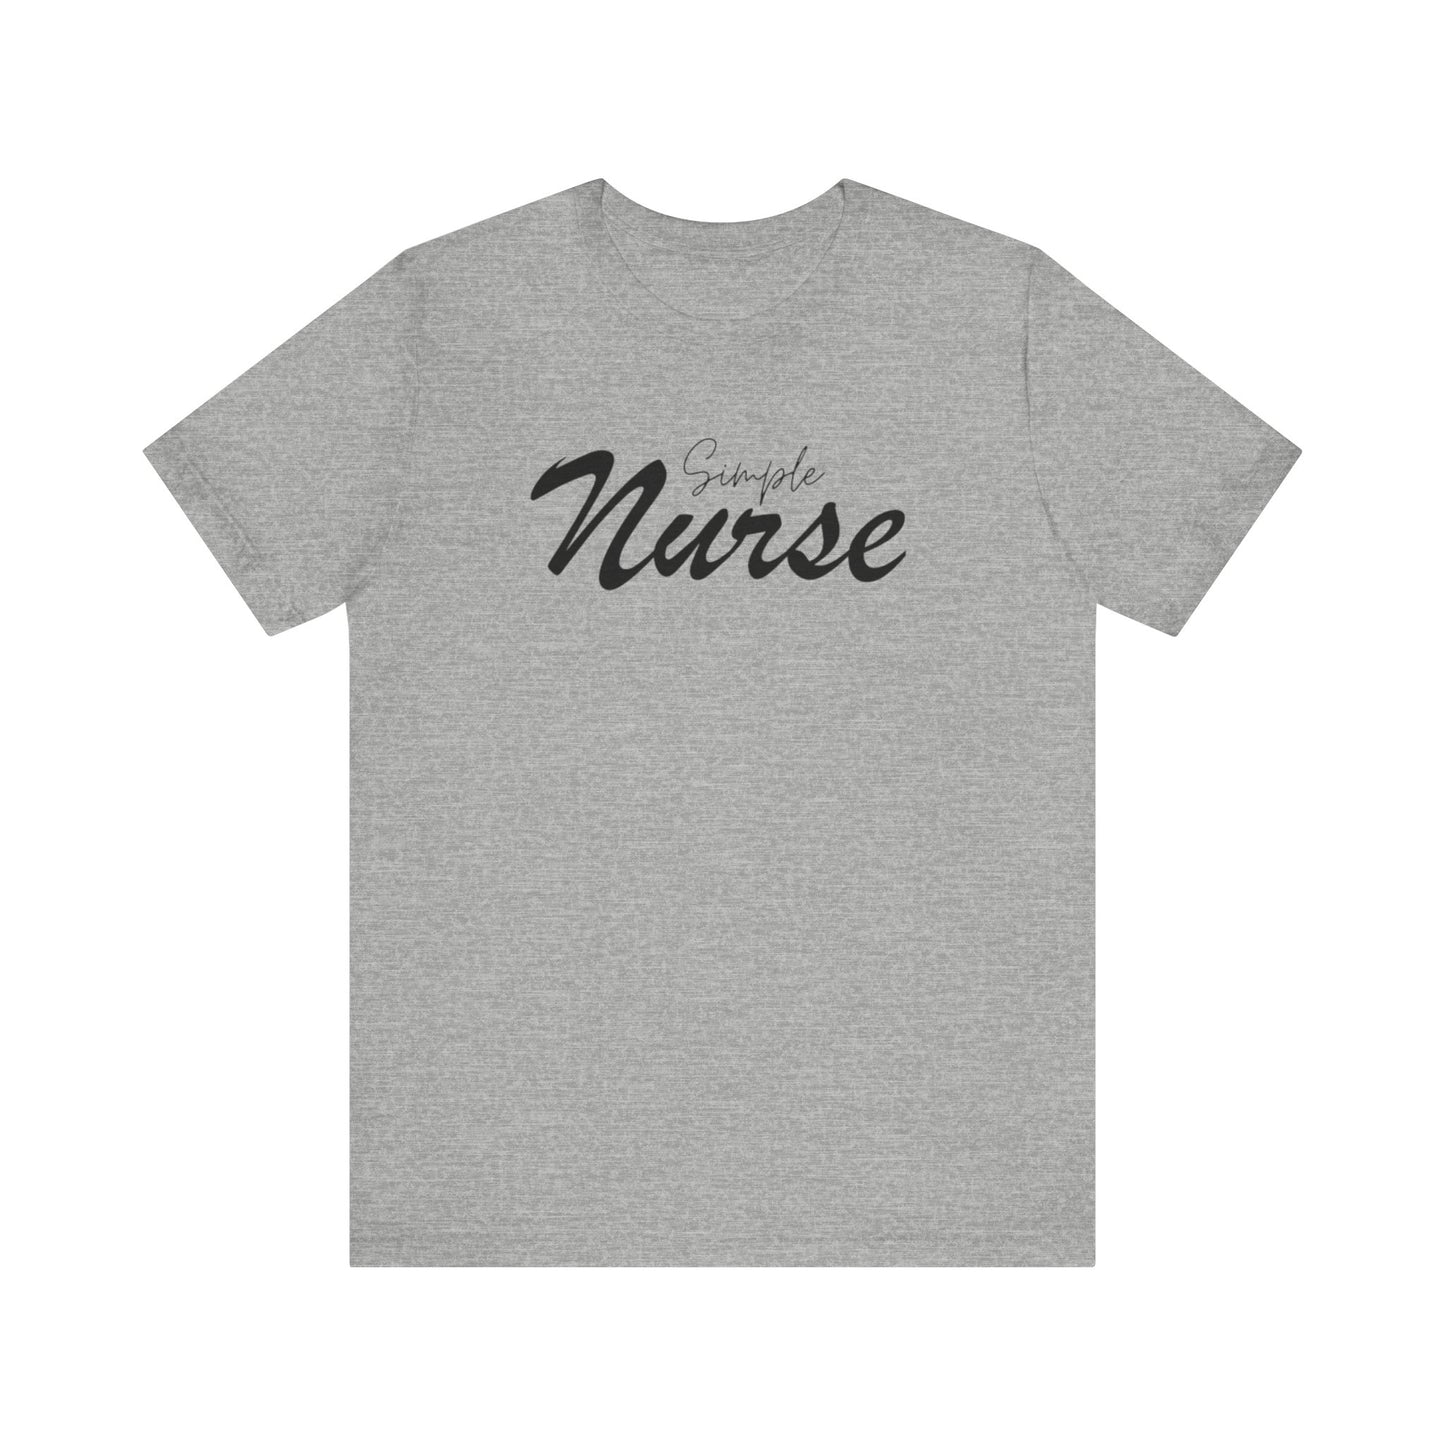 "Simple Nurse" - Short Sleeve